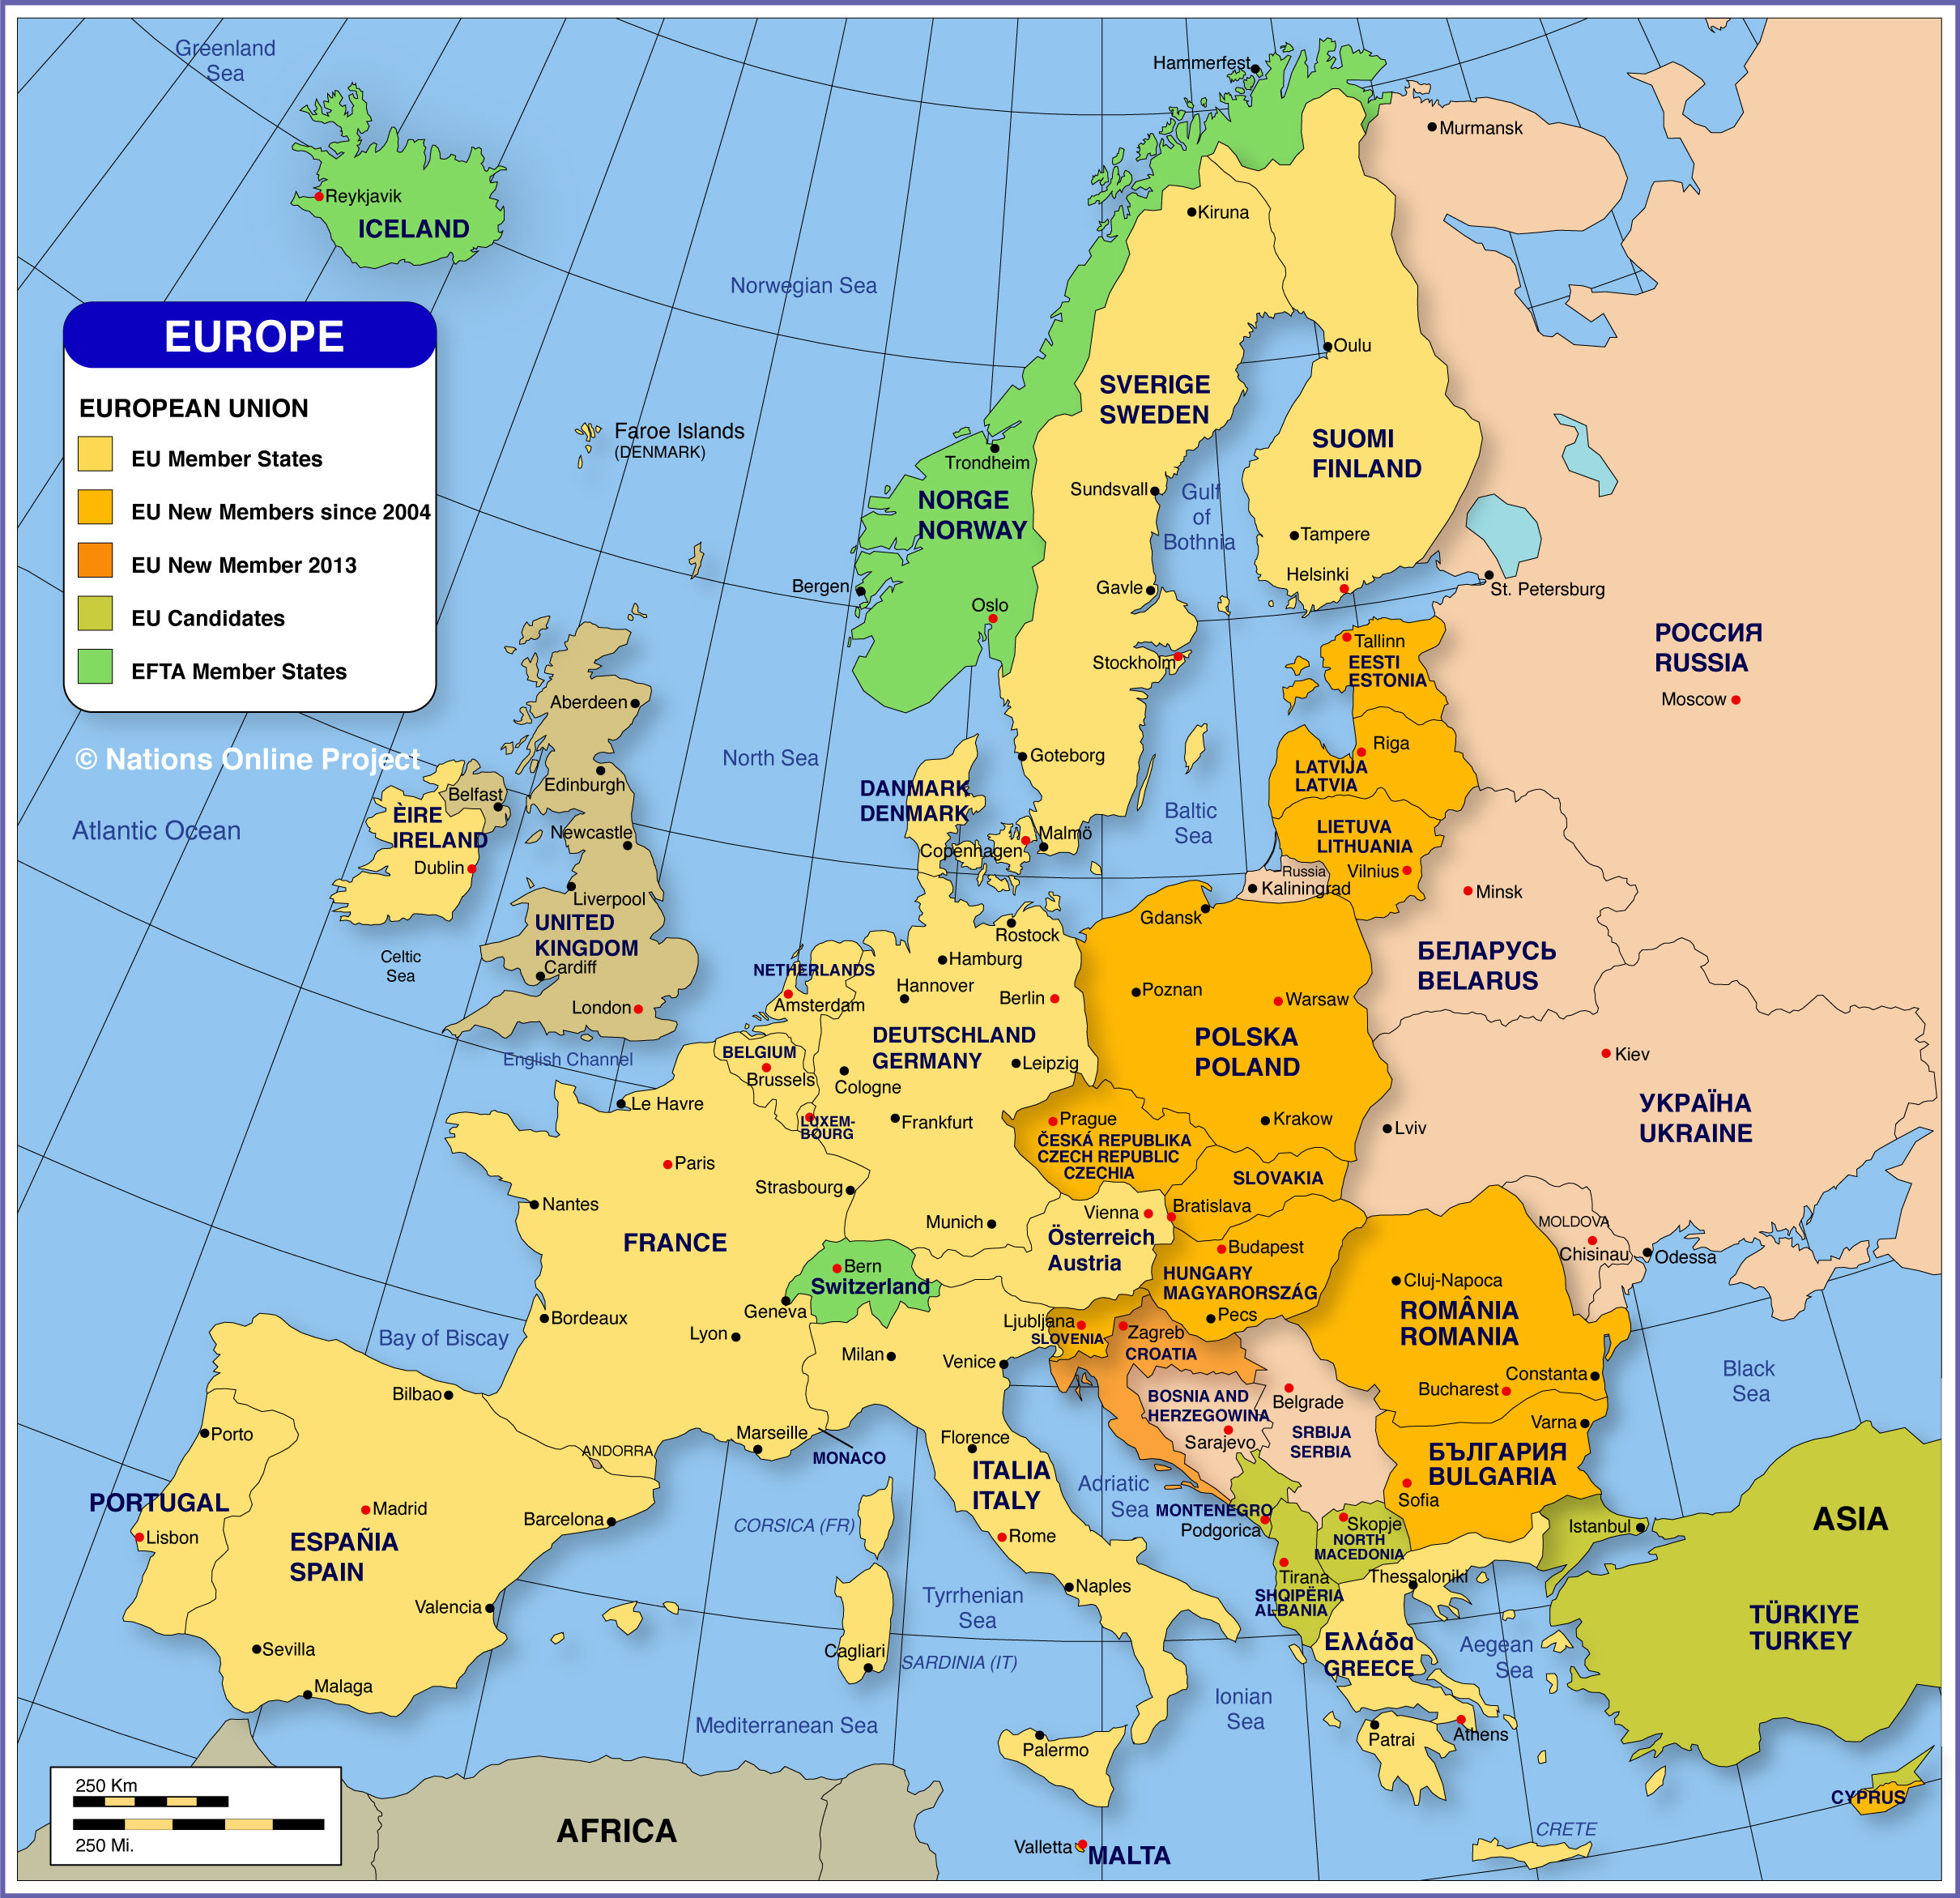 Bản đồ năm 2024 châu Âu sẽ giúp bạn cập nhật những thông tin mới nhất về phát triển kinh tế, xã hội và văn hoá của các quốc gia trên lục địa này. Bản đồ này cũng cung cấp thông tin về các sự kiện văn hóa và thể thao quan trọng sắp diễn ra tại châu Âu.